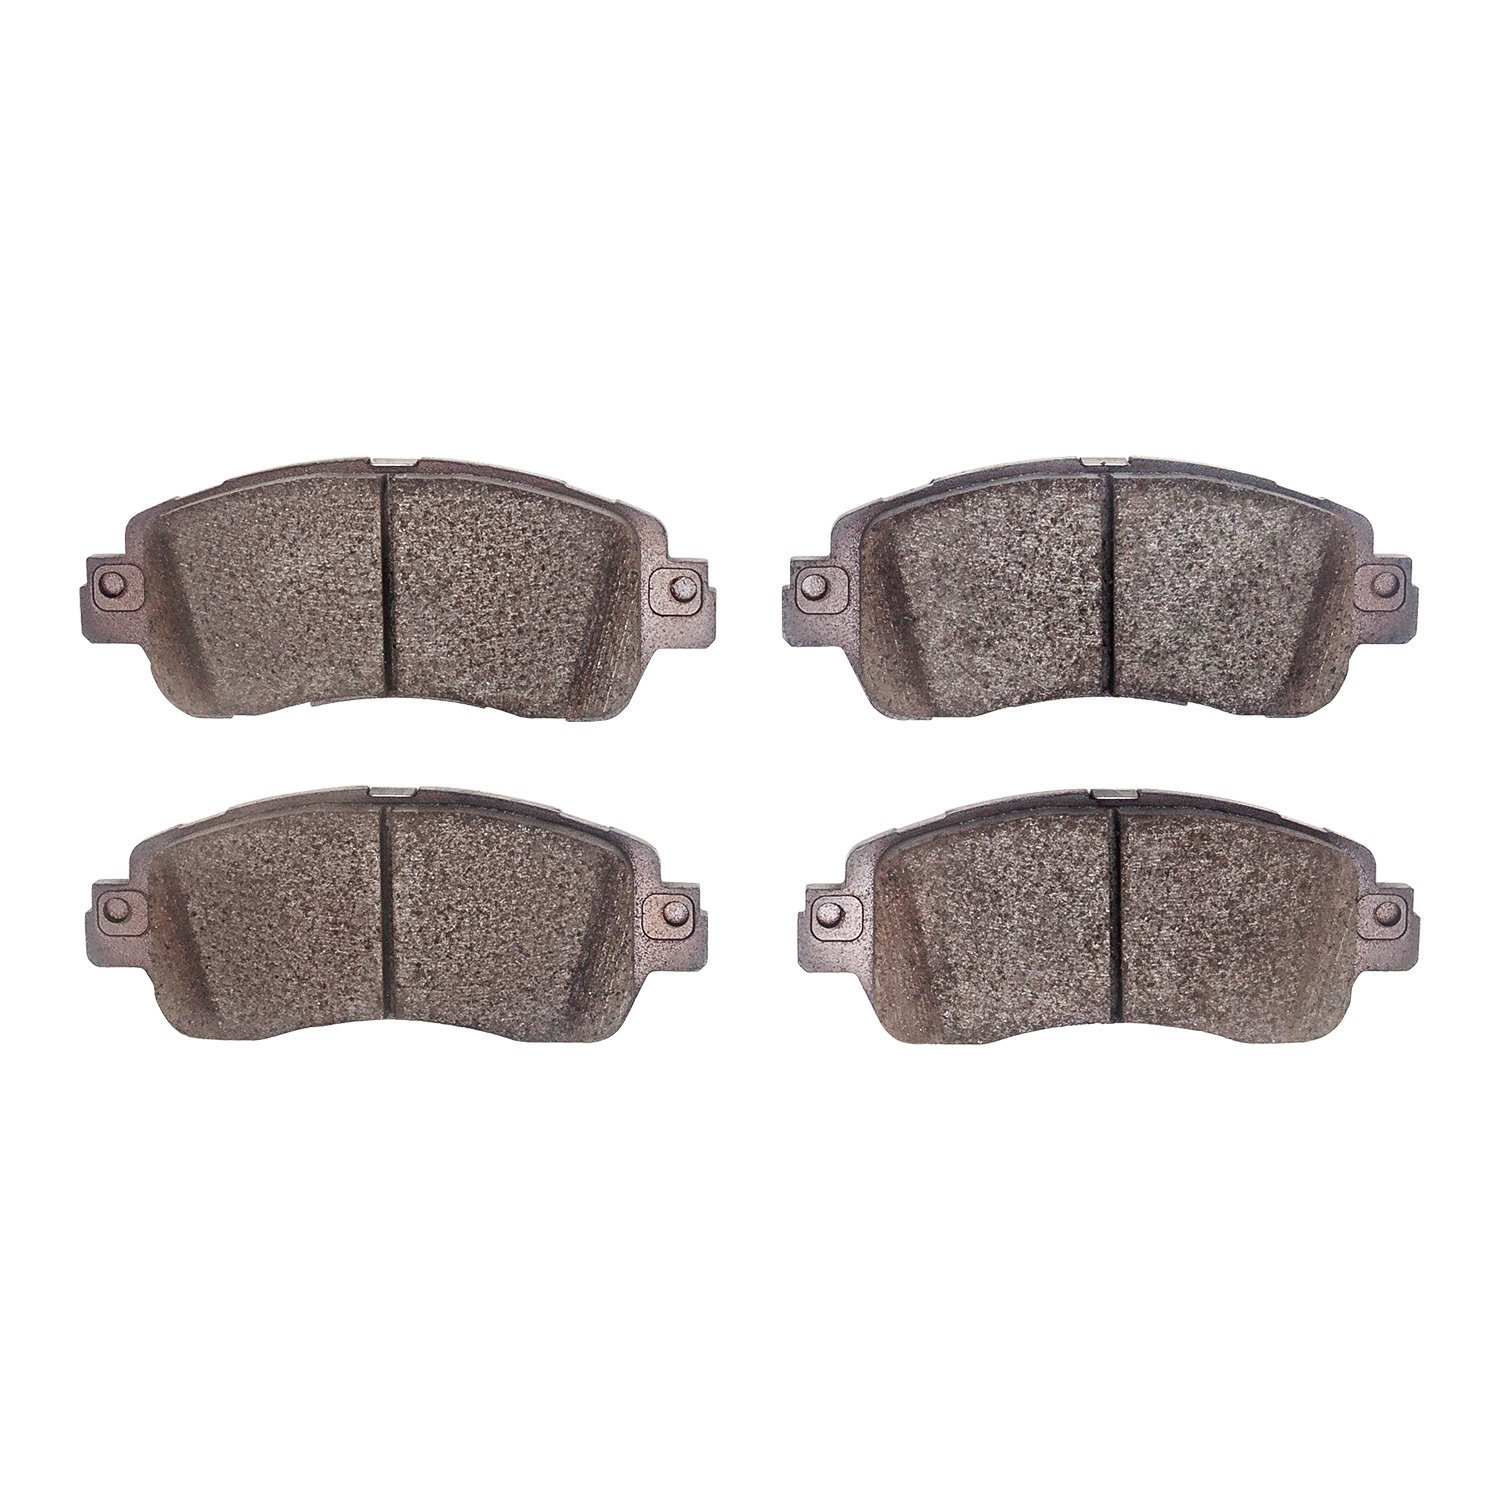 Ceramic Brake Pads, 2016-2020 Fits Multiple Makes/Models, Position: Front